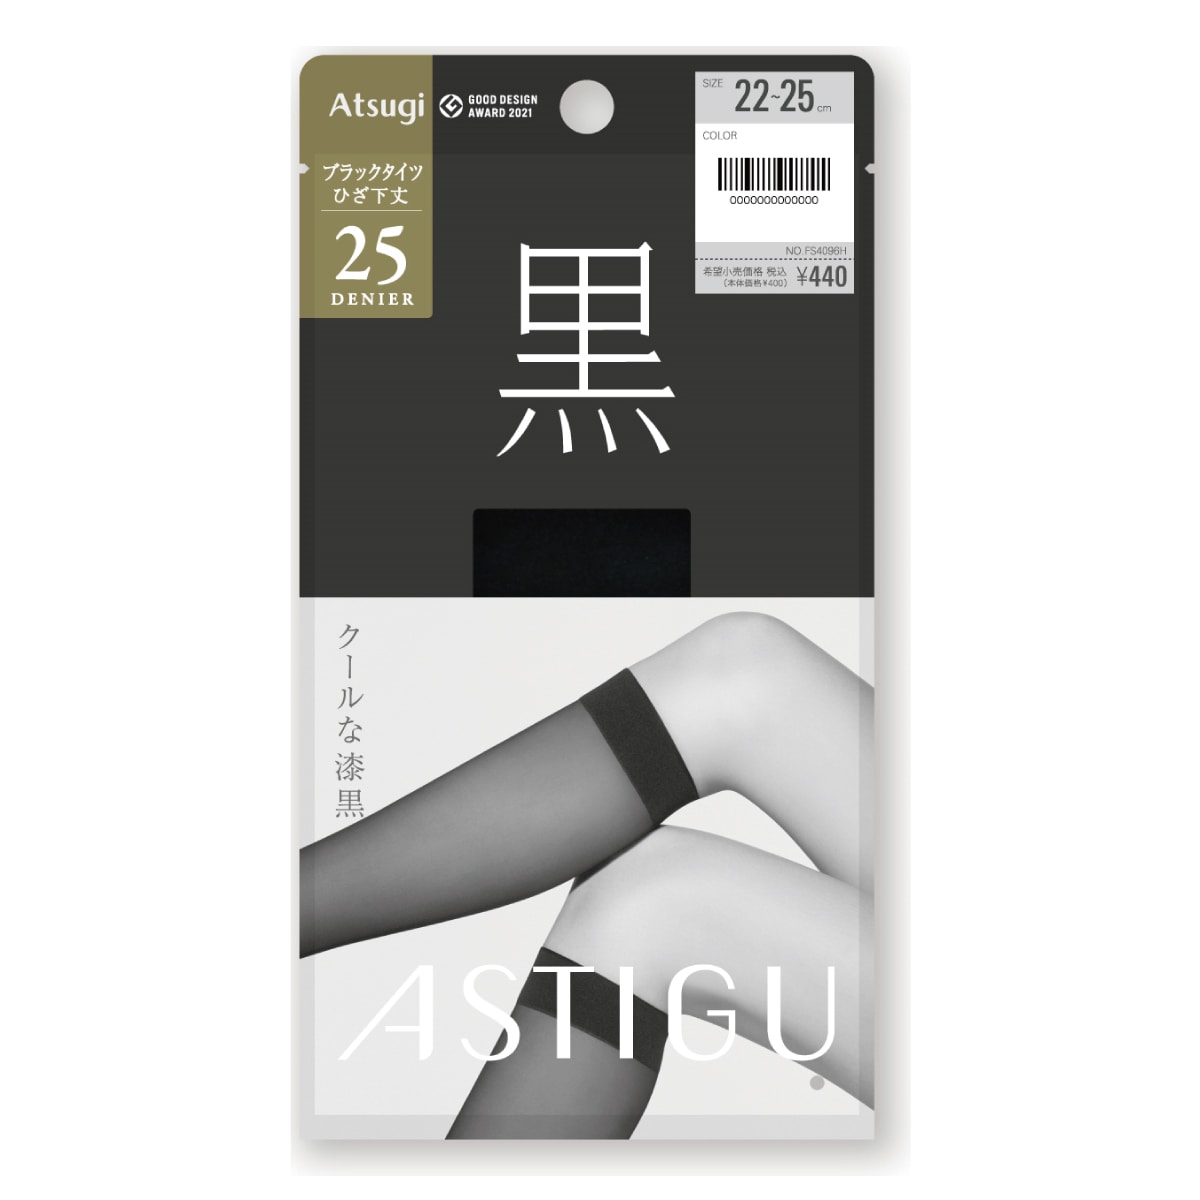 公式) ASTIGU アスティーグASTIGU【黒】クールな漆黒 ひざ下丈25デニールシアータイツ ATSUGI（アツギ）公式直販